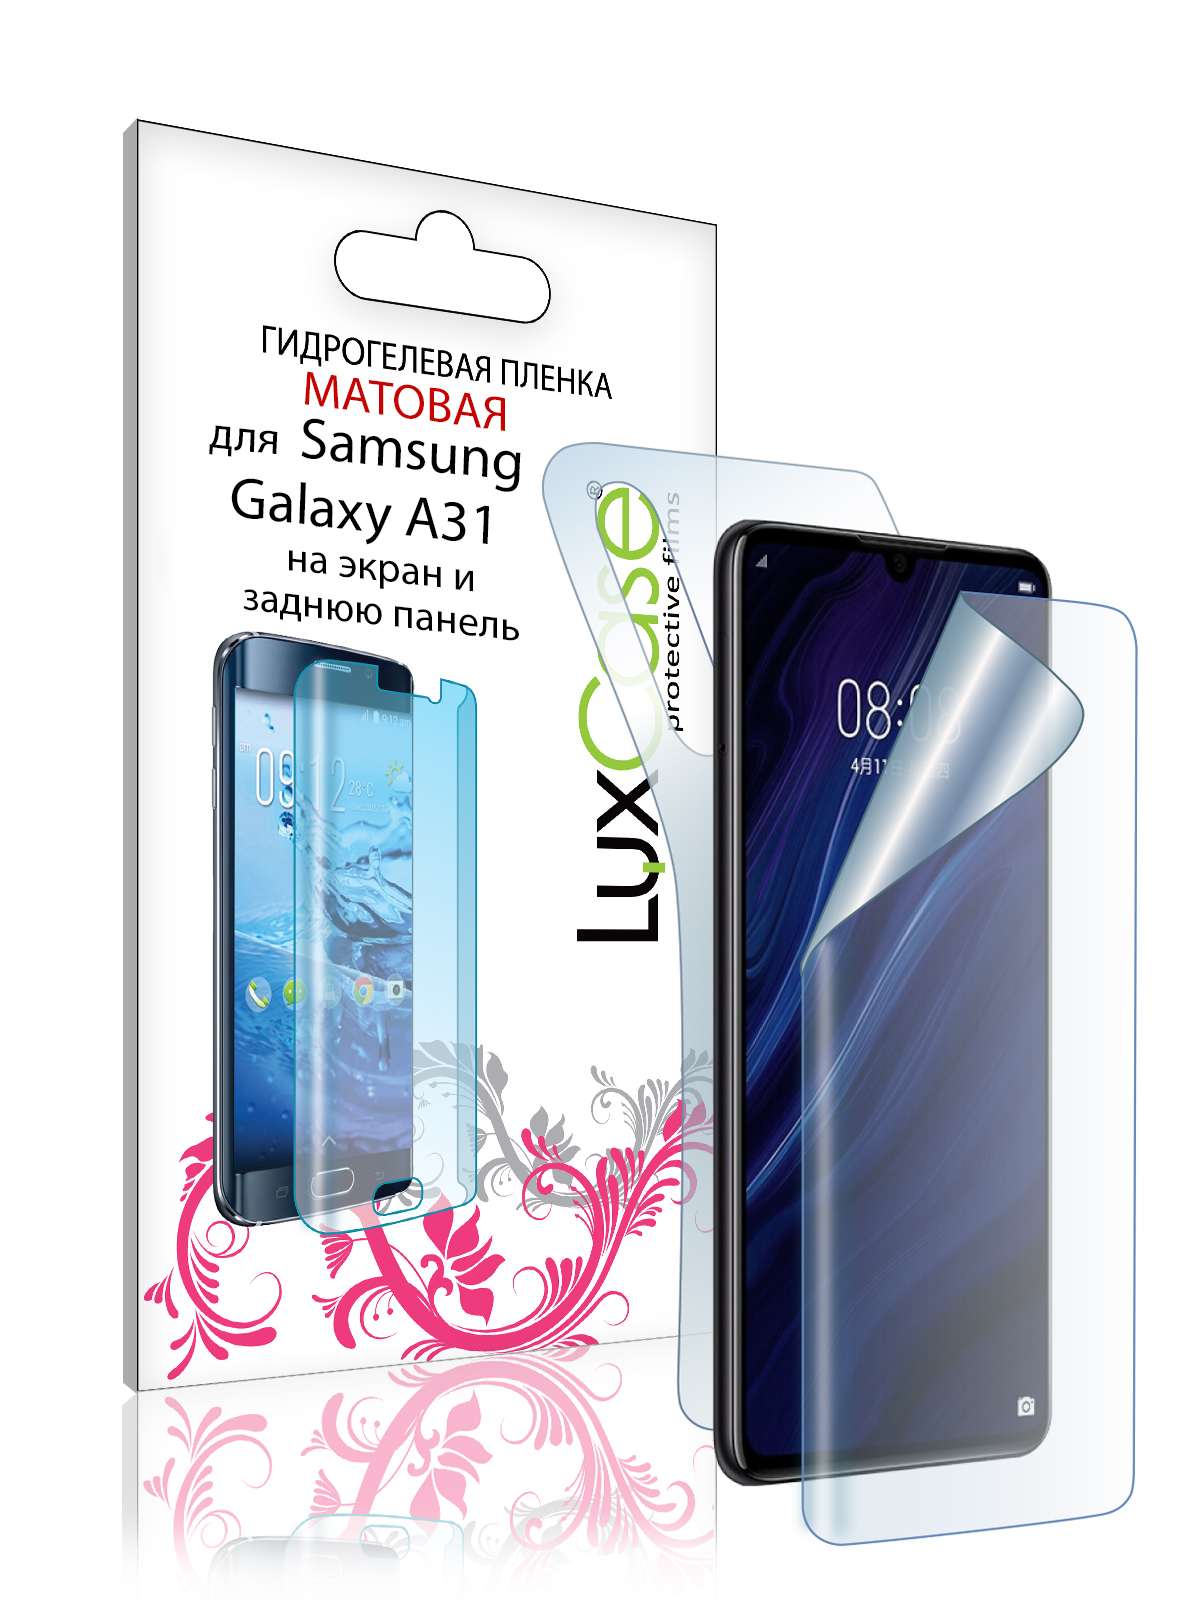 Гидрогелевая пленка LuxCase для Samsung Galaxy A31, Матовая, 0,14 мм, Front&Back гидрогелевая пленка samsung galaxy a31 самсунг галакси a31 на дисплей и заднюю крышку матовая